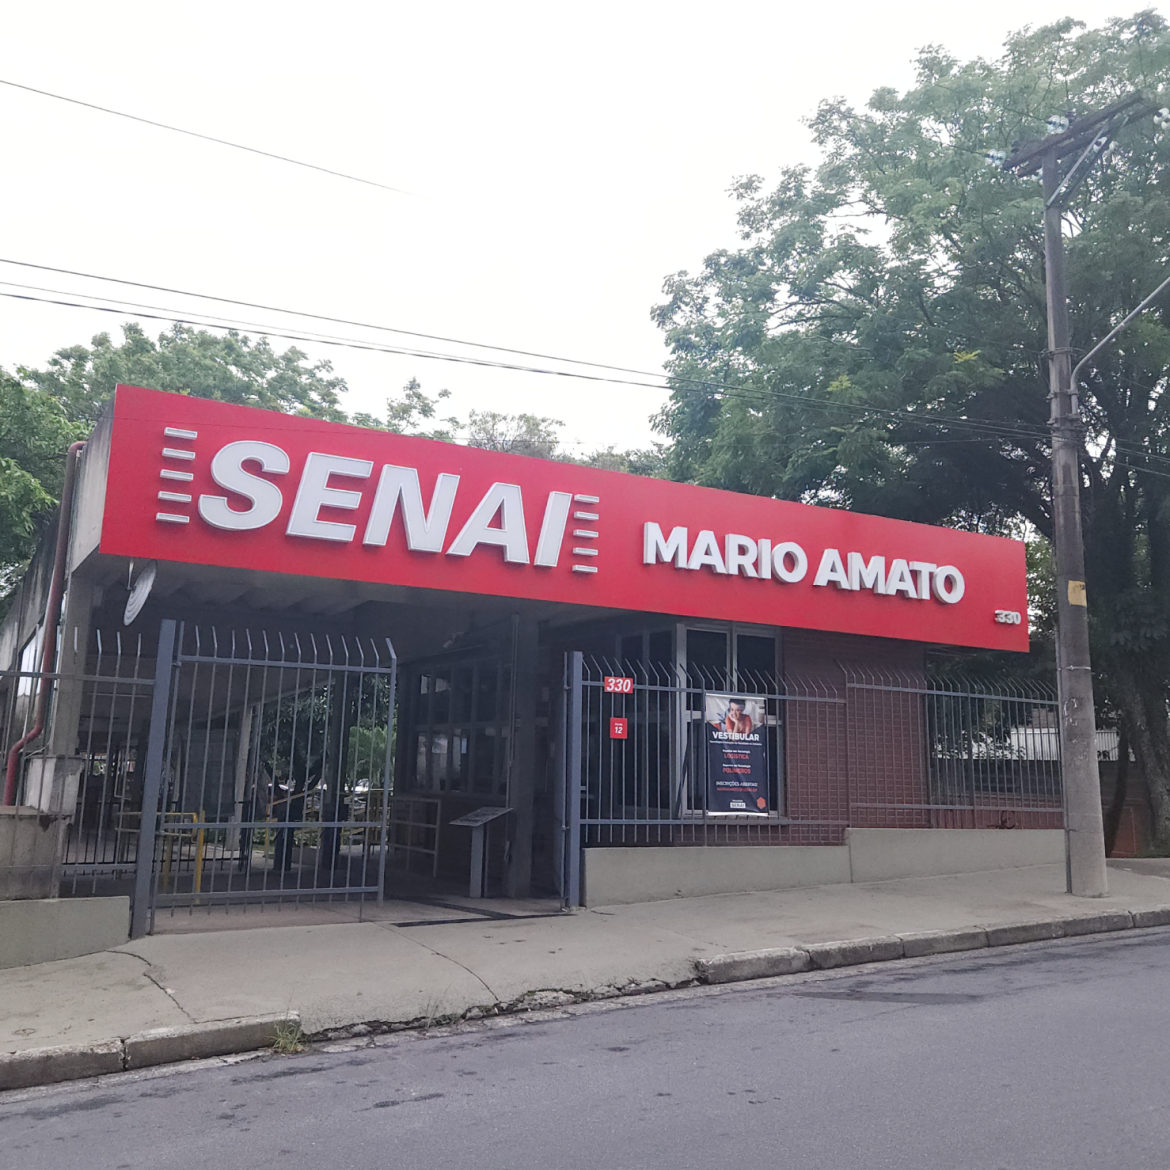 SENAI São Bernardo do Campo - M. Amato